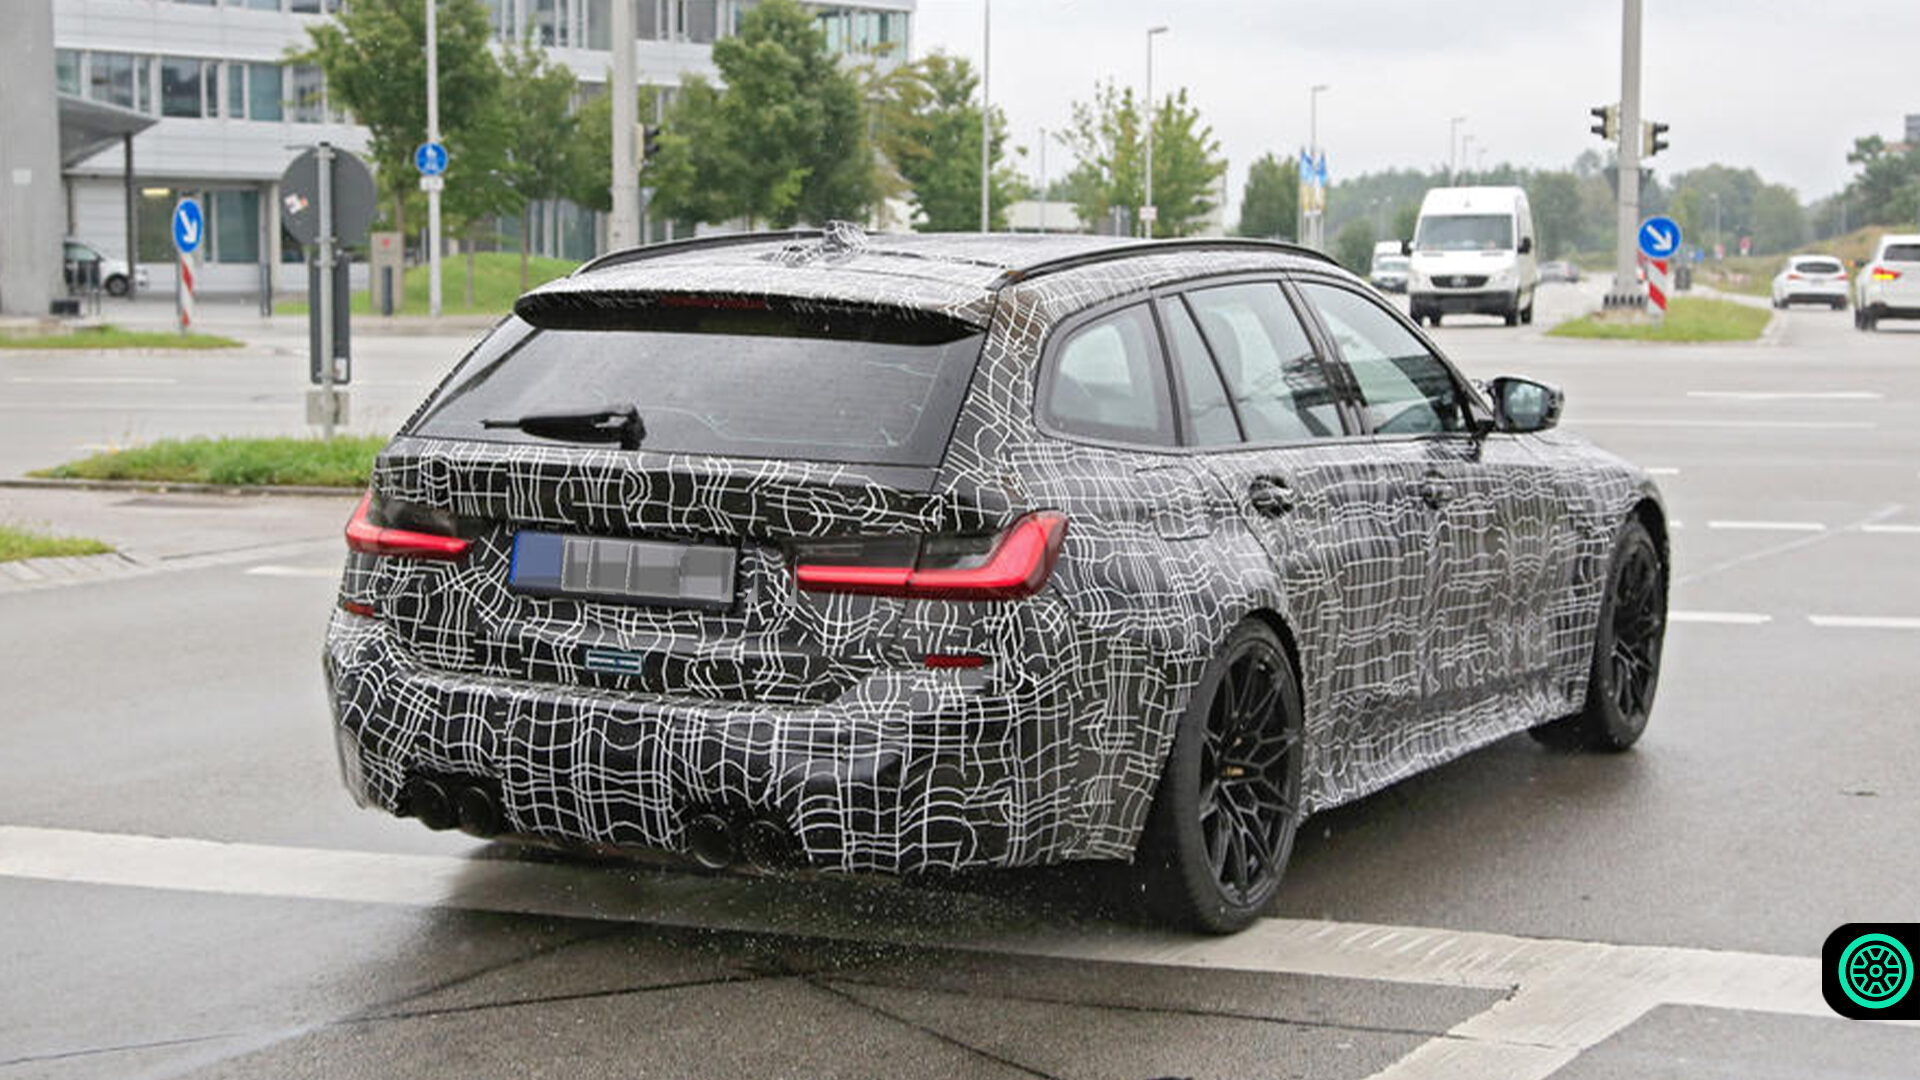 2022 BMW M3 Touring modelinin teaser görüntüleri paylaşıldı 1